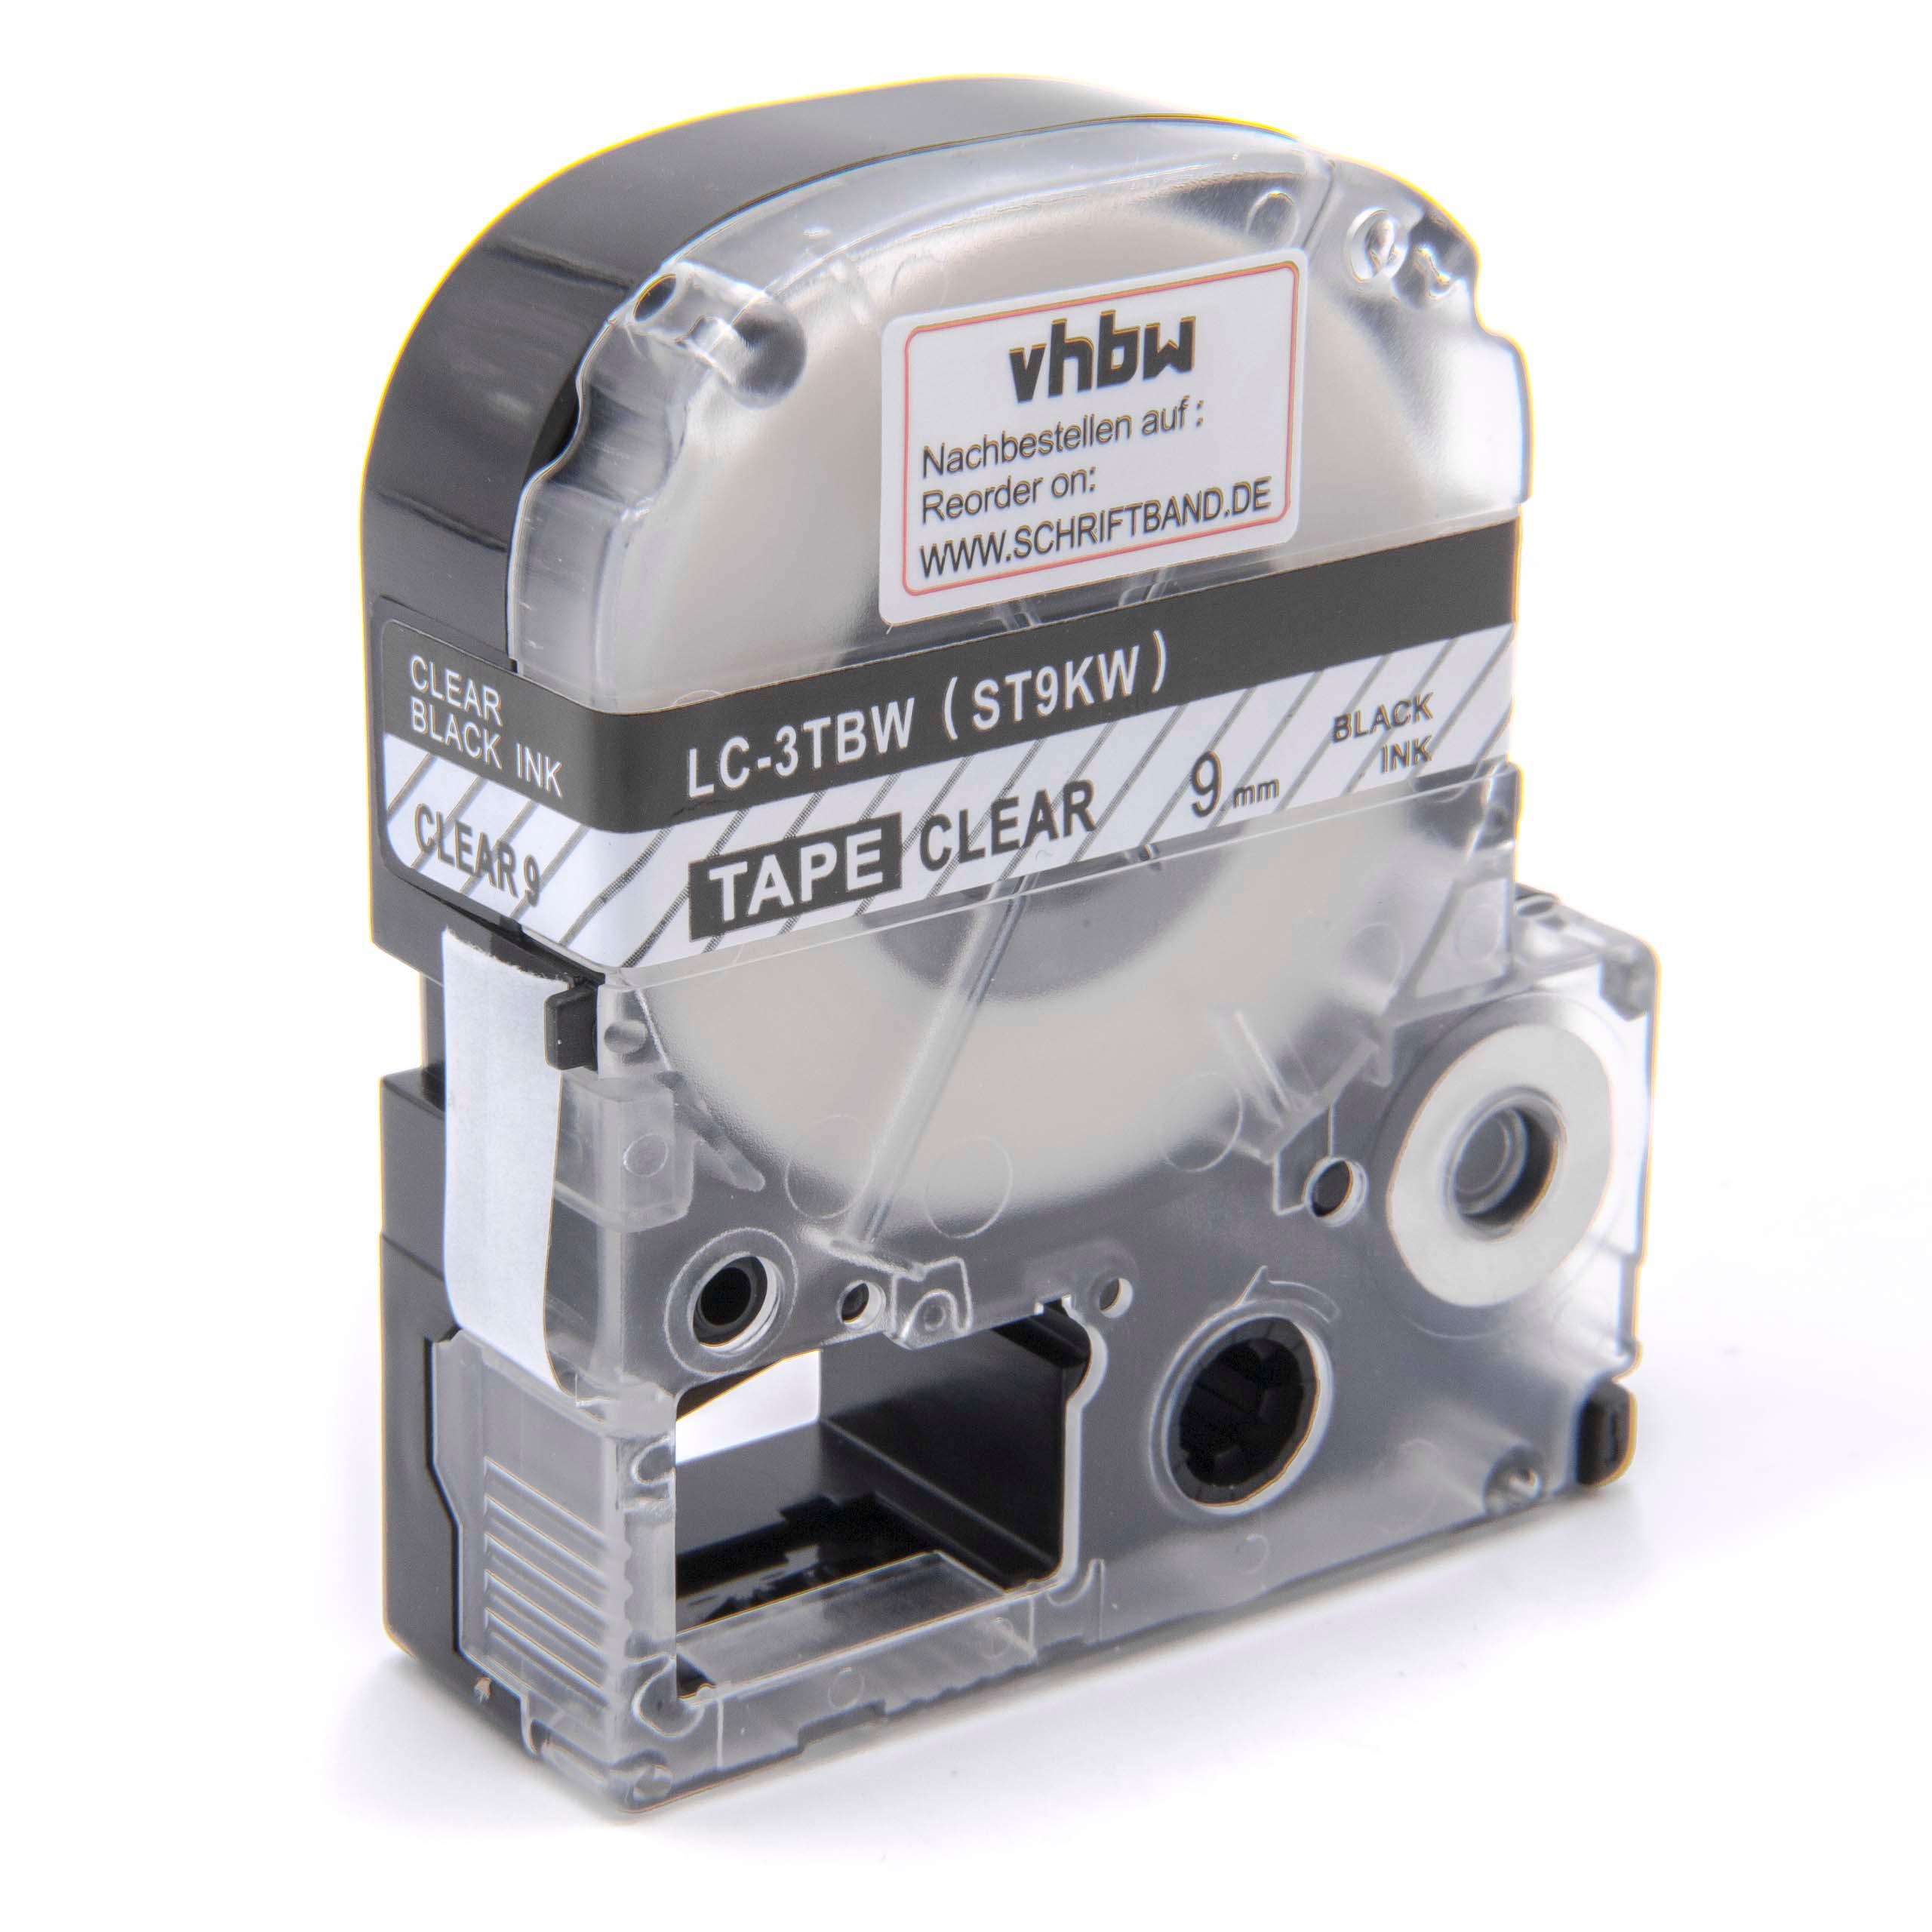 Cassetta nastro sostituisce Epson LC-3TBW per etichettatrice Epson 9mm nero su trasparente